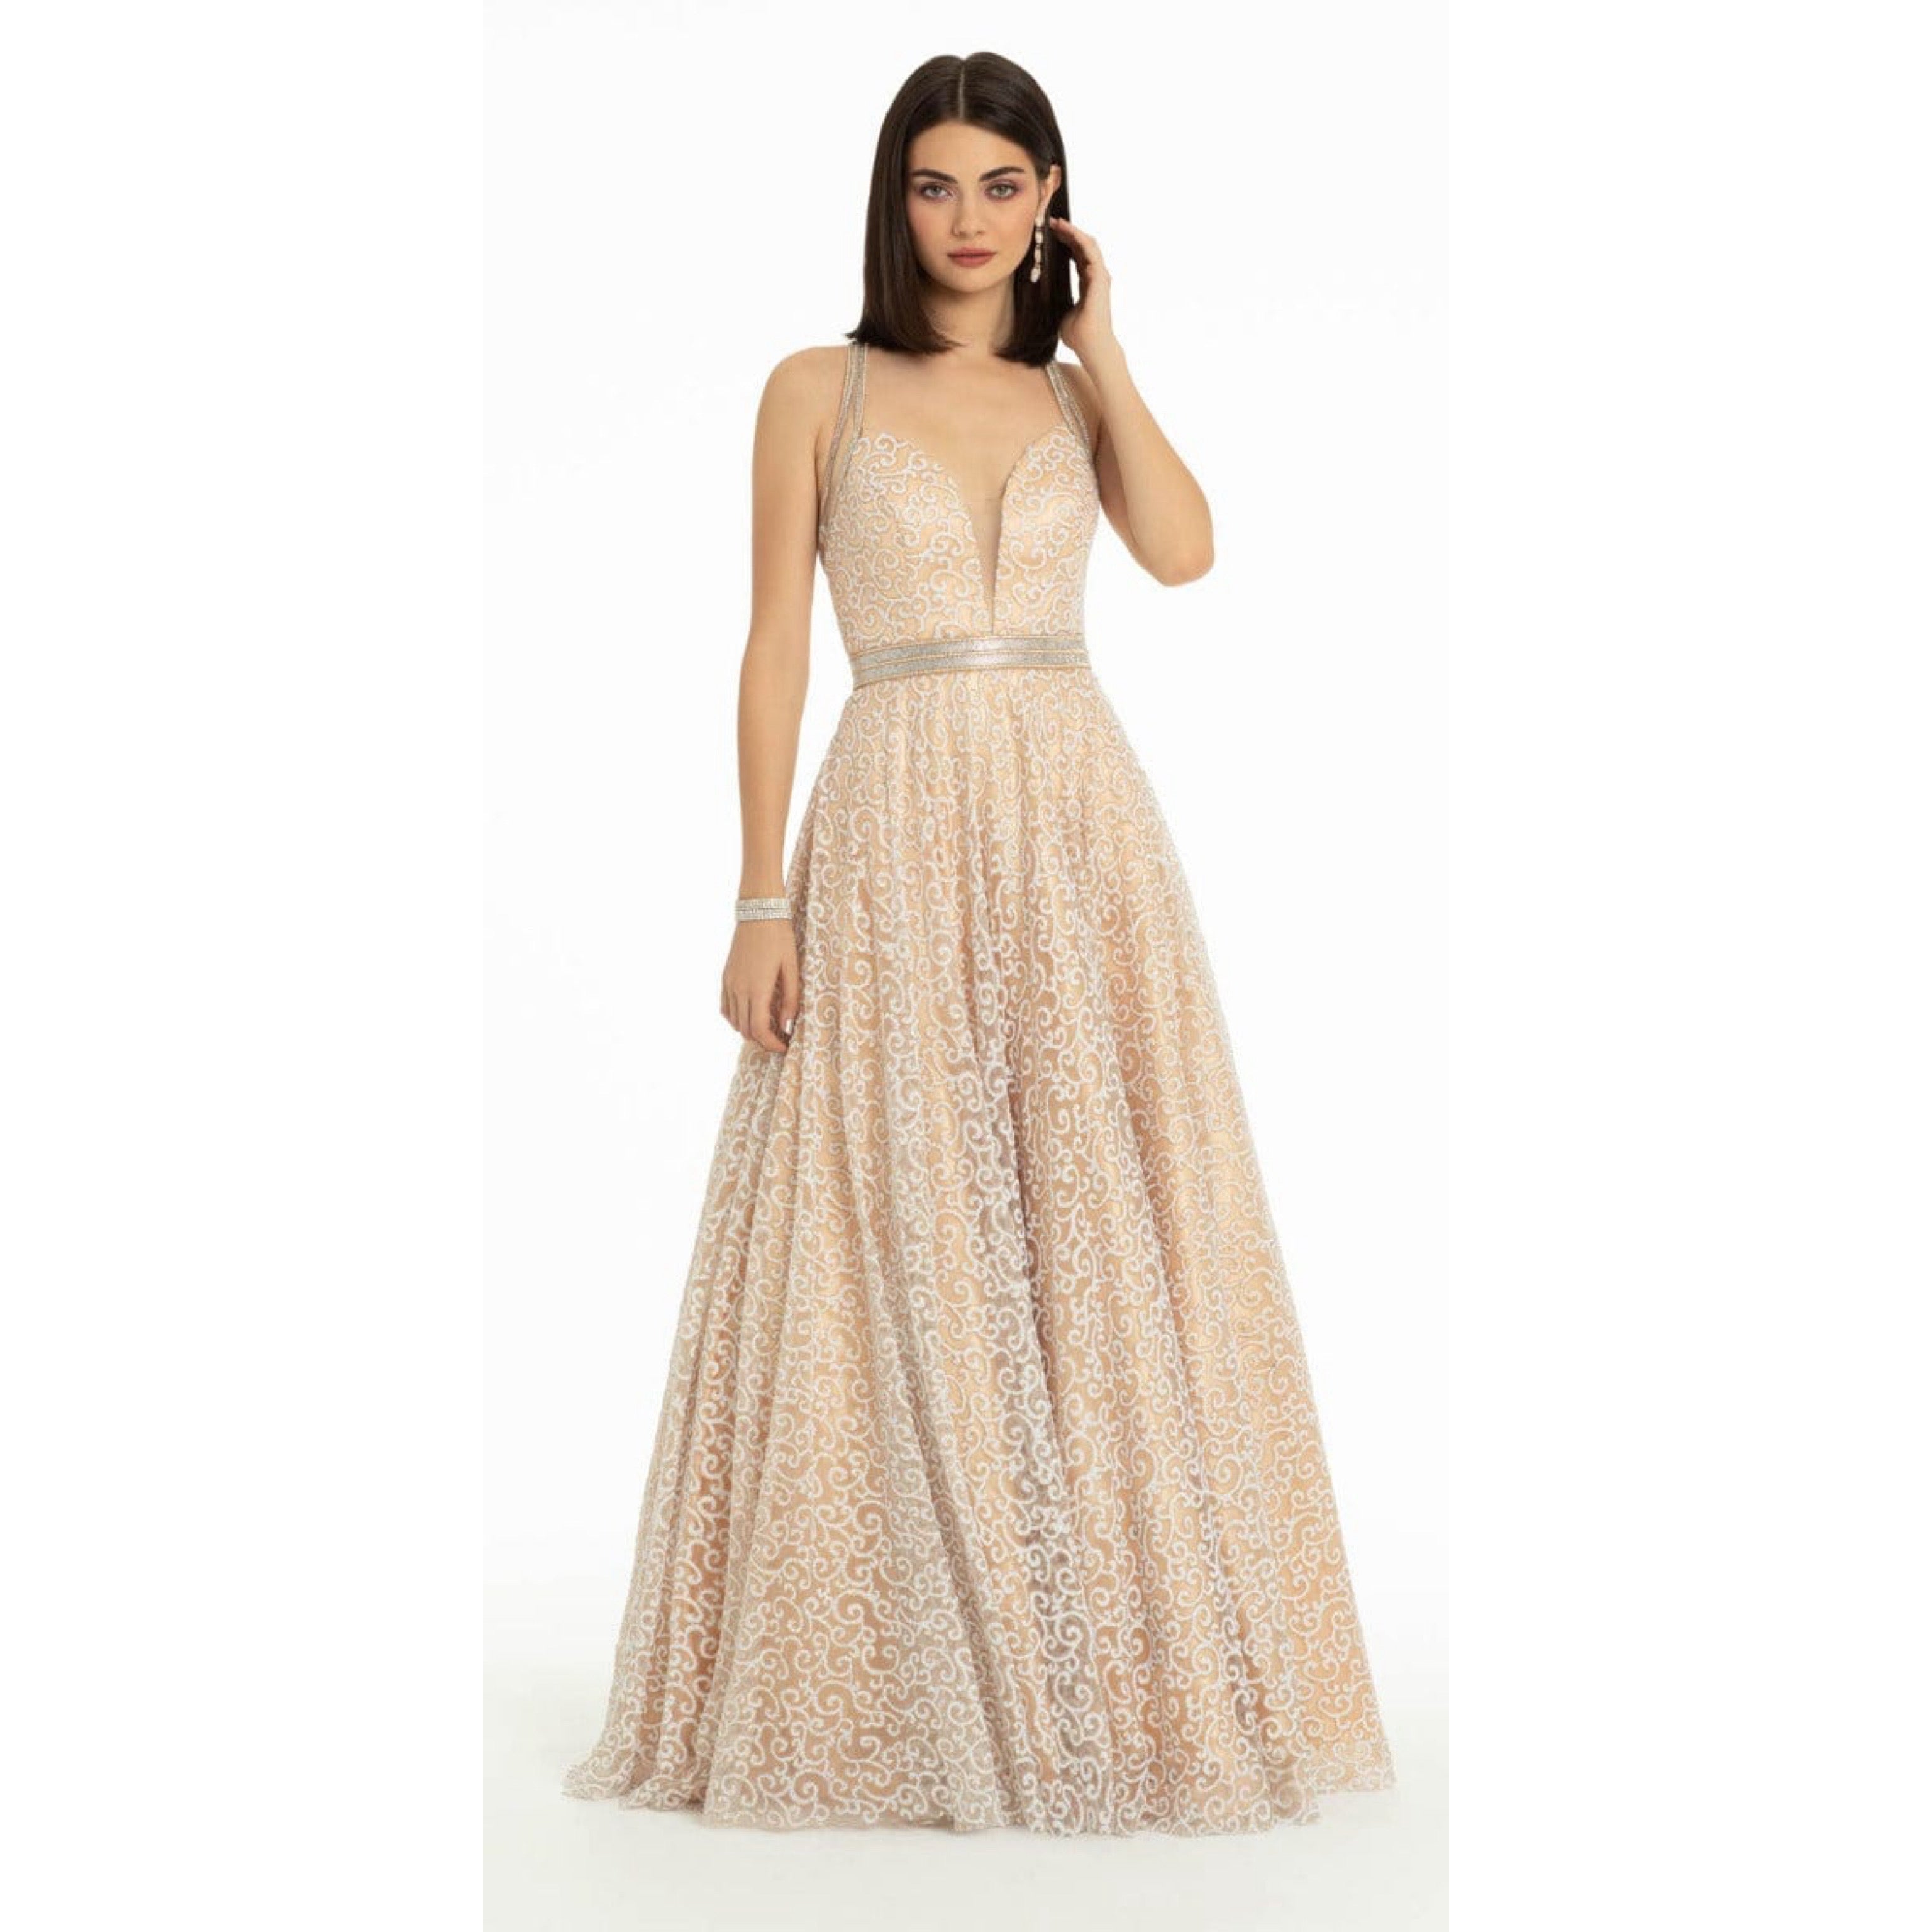 Camille la Via champagne dress, size 14